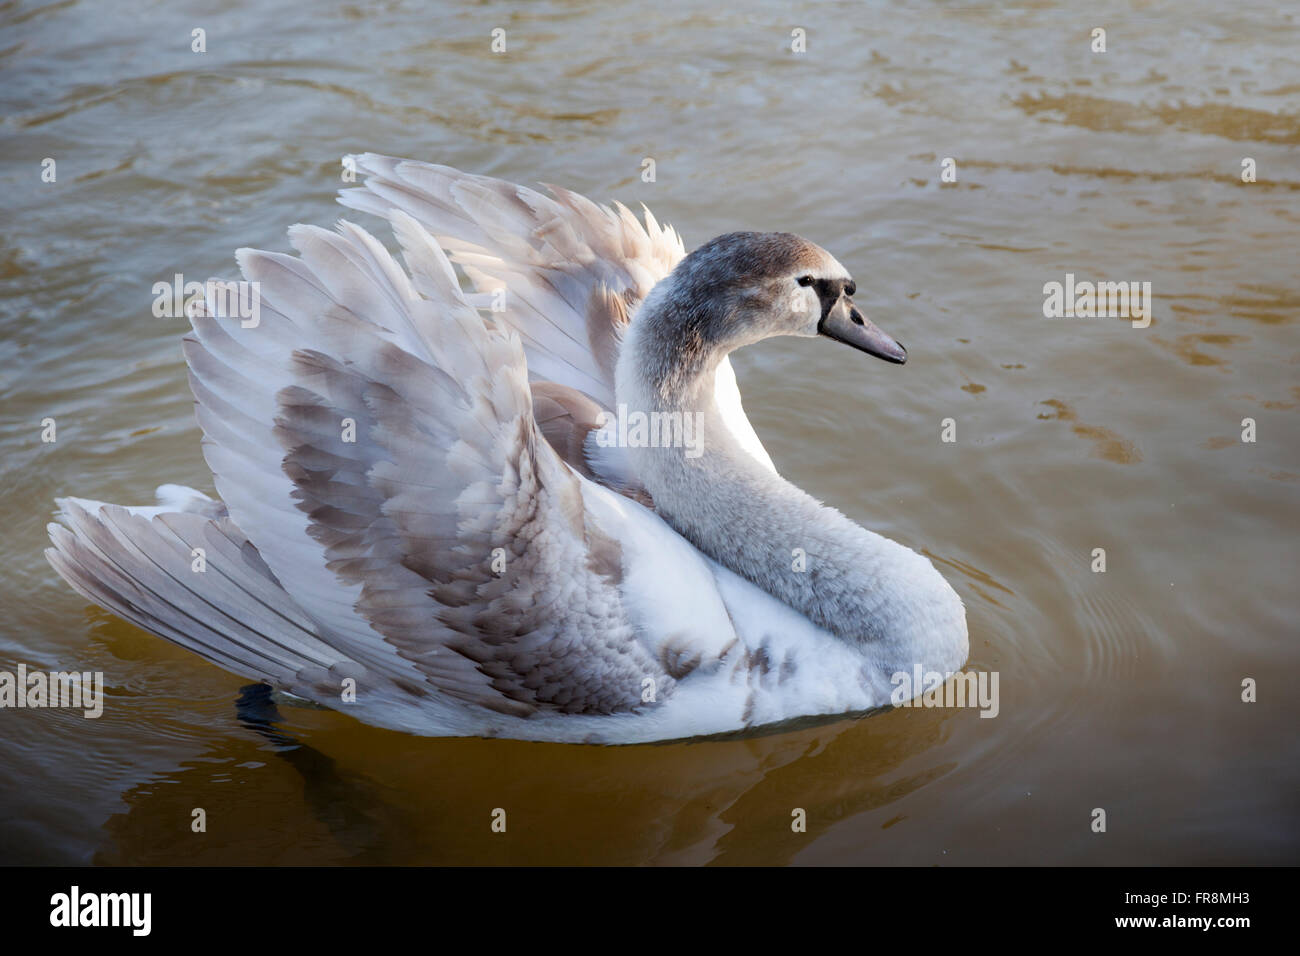 Nahaufnahme des Gefieders eines jungen stummen Schwans - cygnus olor - auf dem Wasser, England, Großbritannien Stockfoto